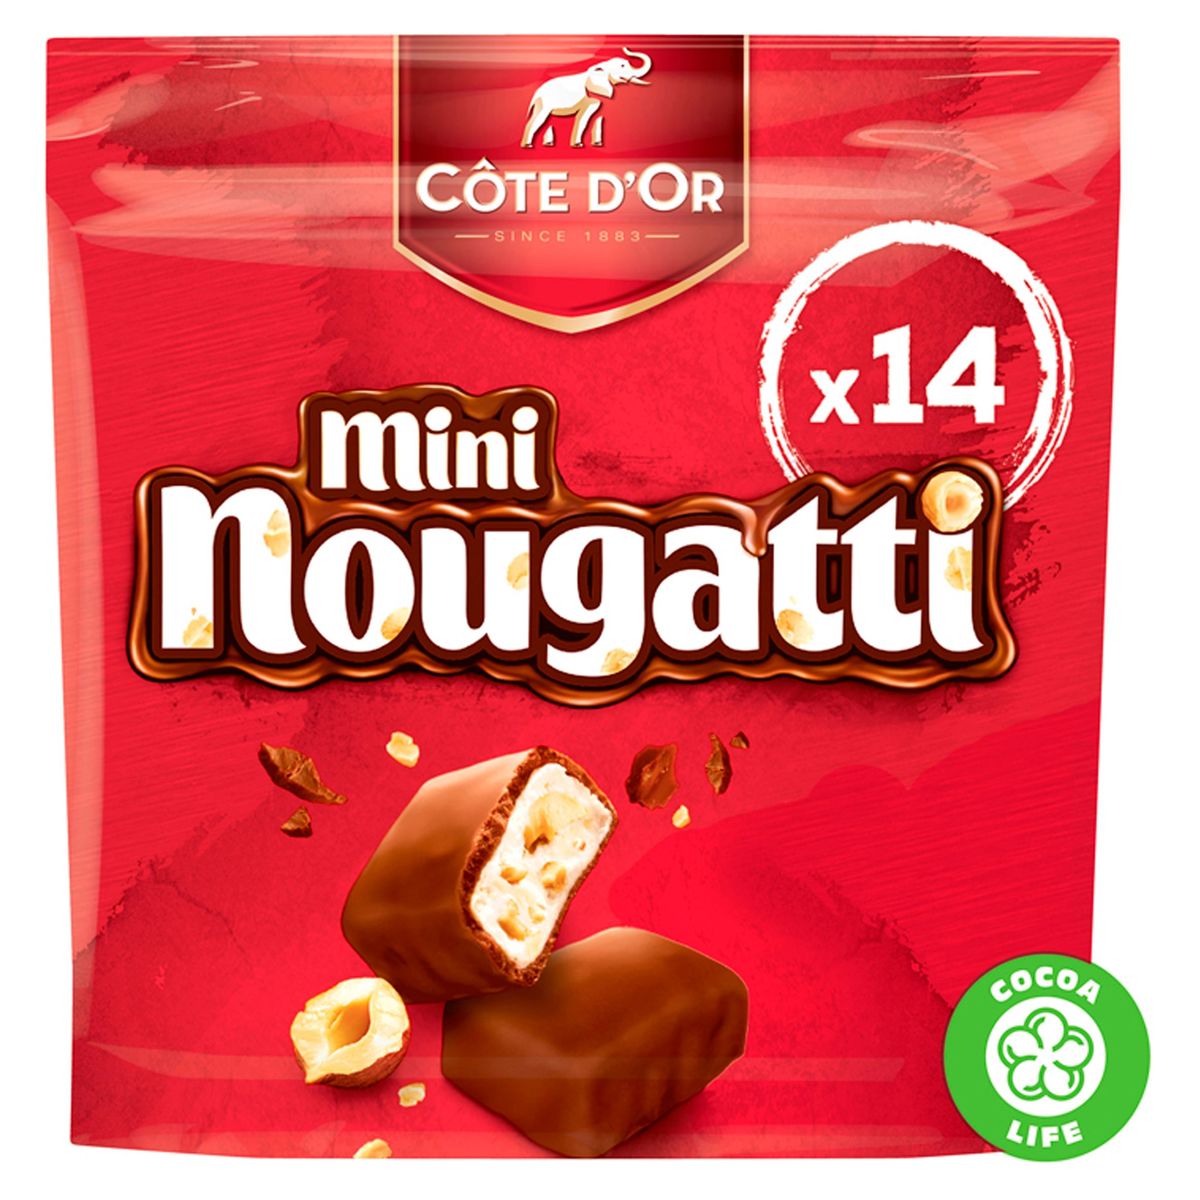 Barre Et Tablette De Chocolat - D Or Nougatti Nougat Lait Cacao